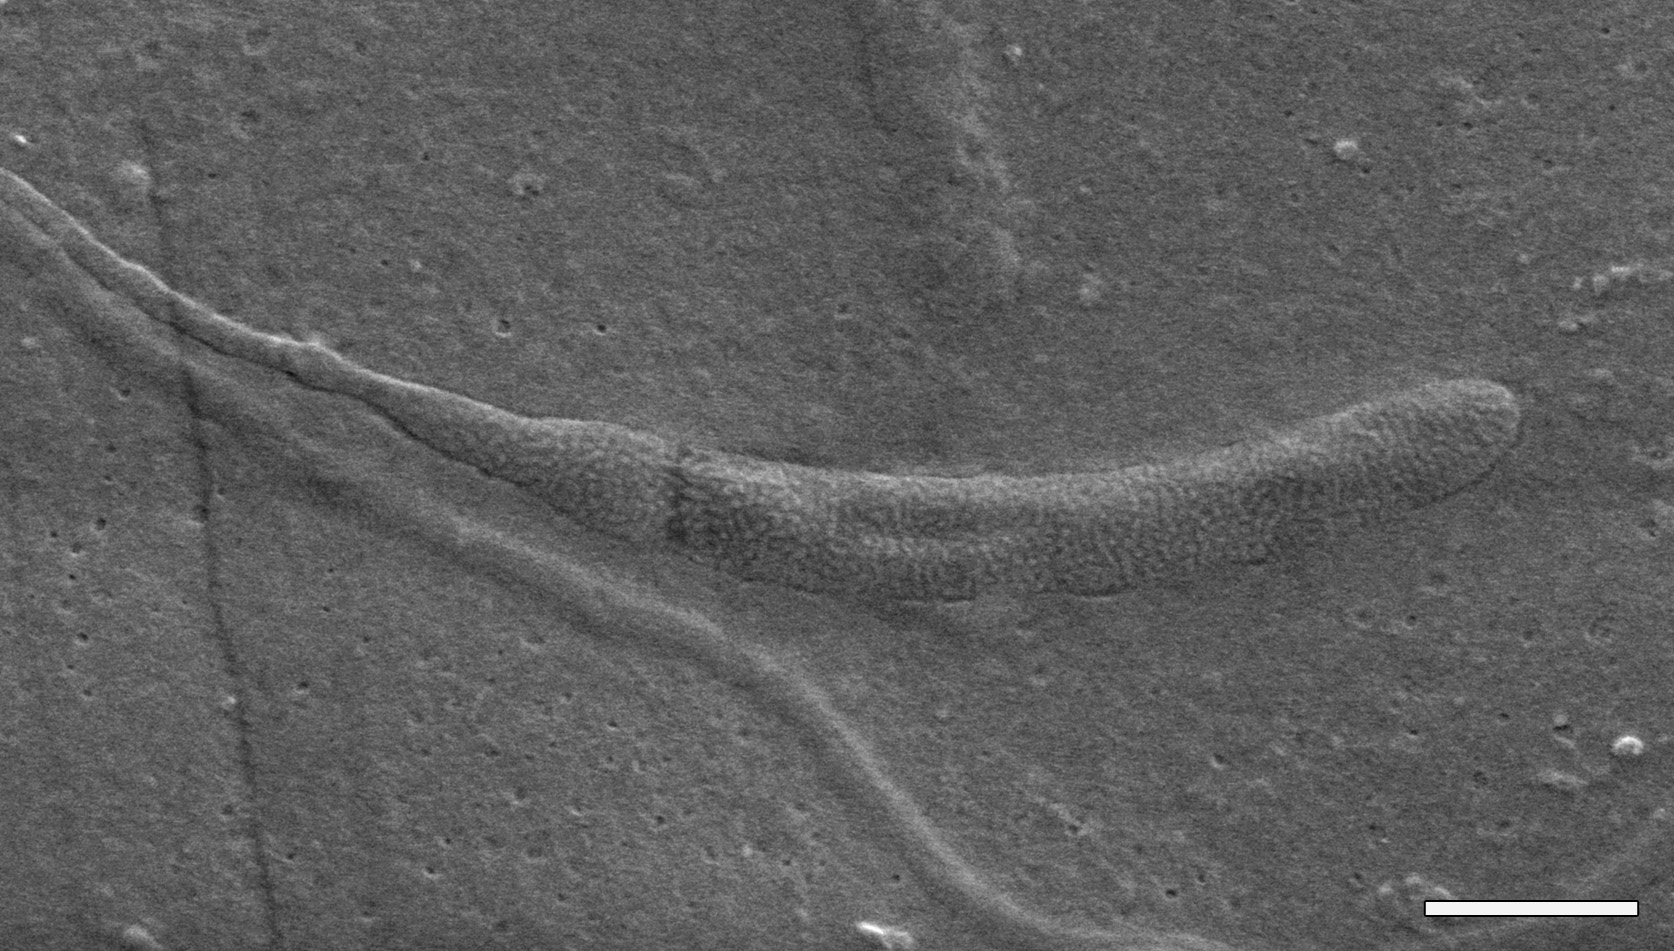 50-Million-Year-Old Worm Sperm Found Preserved In Antarctica